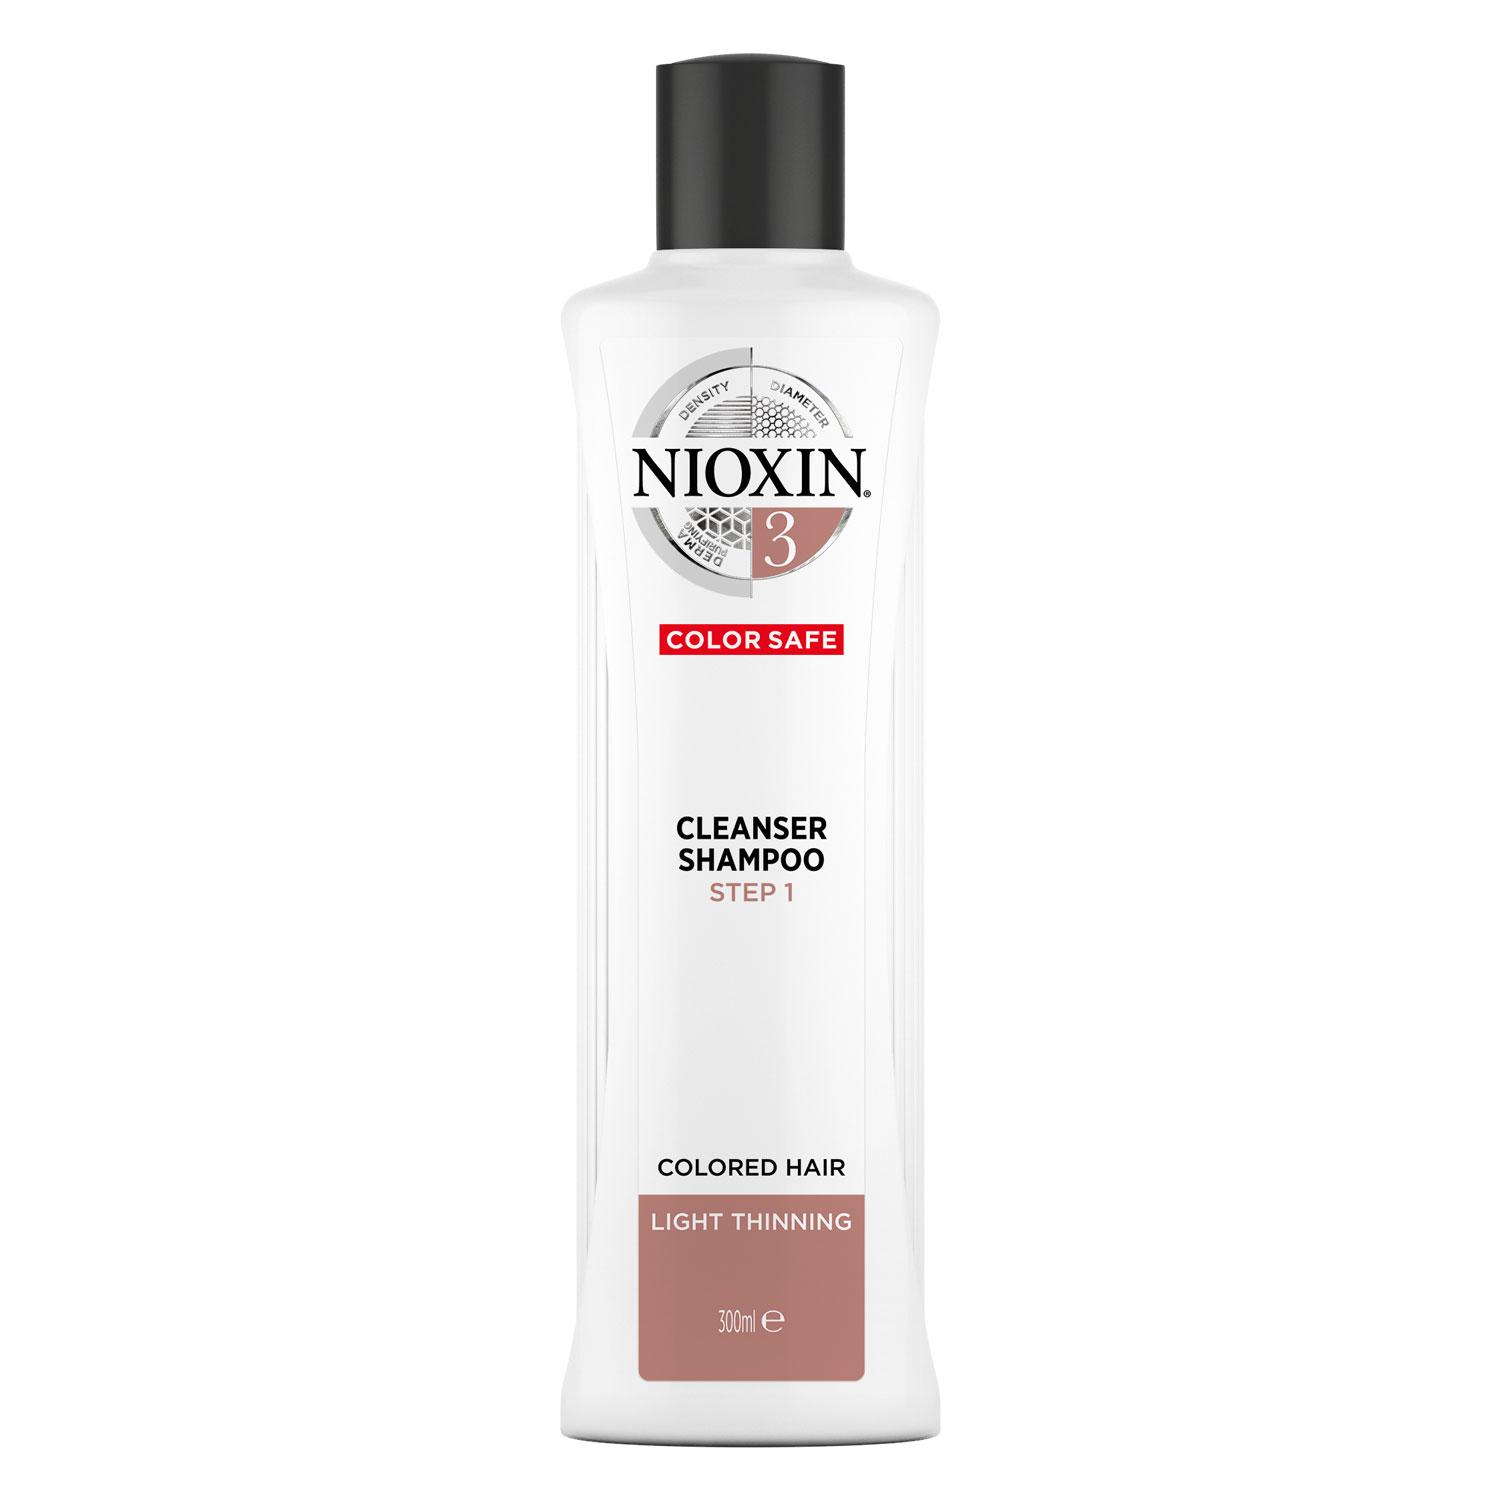 Nioxin - Cleanser Shampoo 3 